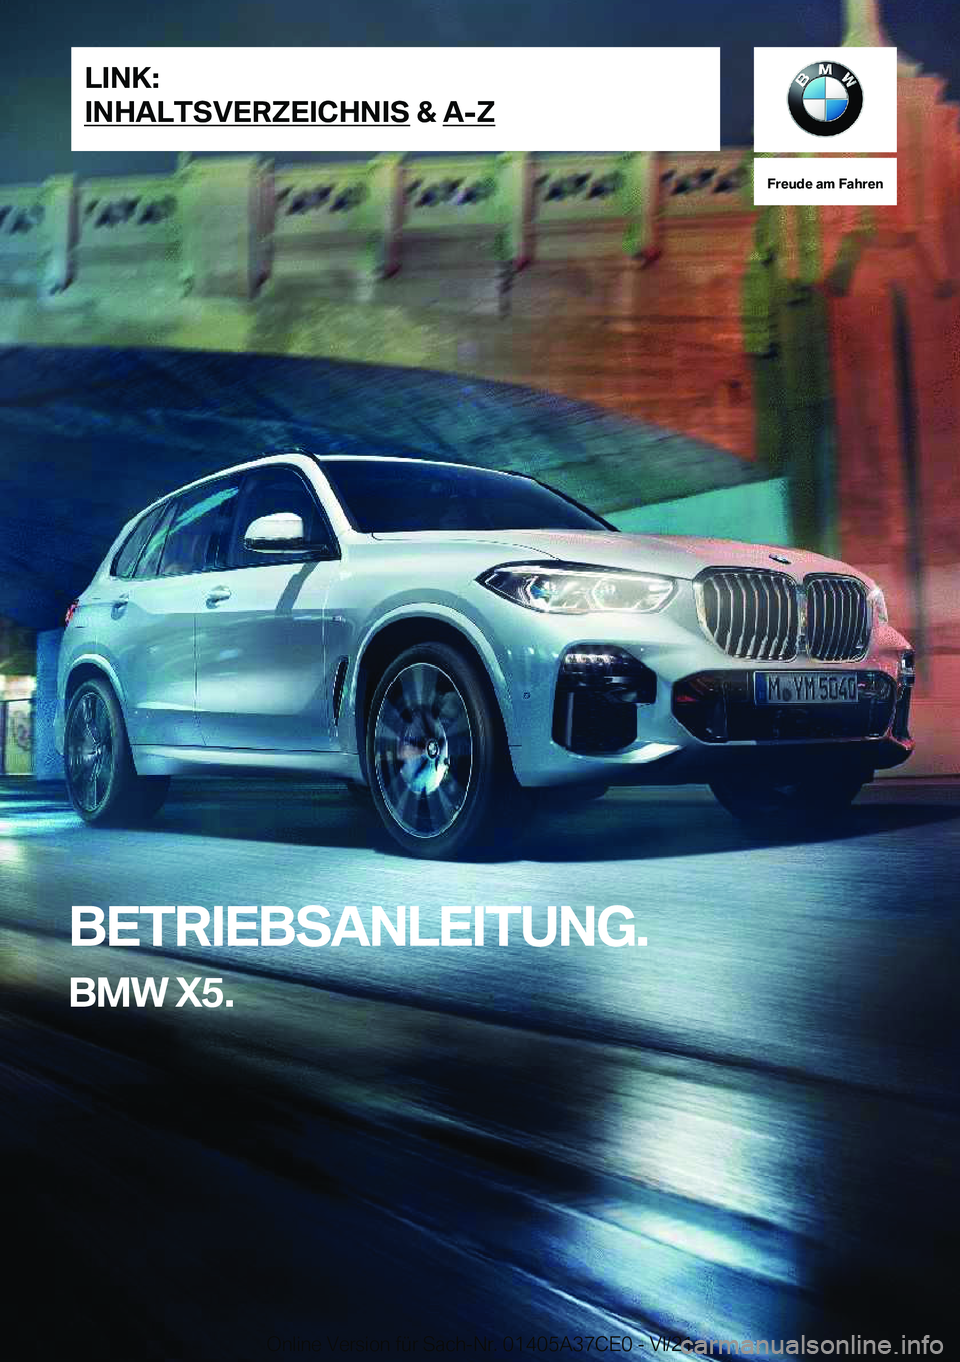 BMW X5 2022  Betriebsanleitungen (in German) �F�r�e�u�d�e��a�m��F�a�h�r�e�n
�B�E�T�R�I�E�B�S�A�N�L�E�I�T�U�N�G�.�B�M�W��X�5�.�L�I�N�K�:
�I�N�H�A�L�T�S�V�E�R�Z�E�I�C�H�N�I�S��&��A�-�Z�O�n�l�i�n�e��V�e�r�s�i�o�n��f�